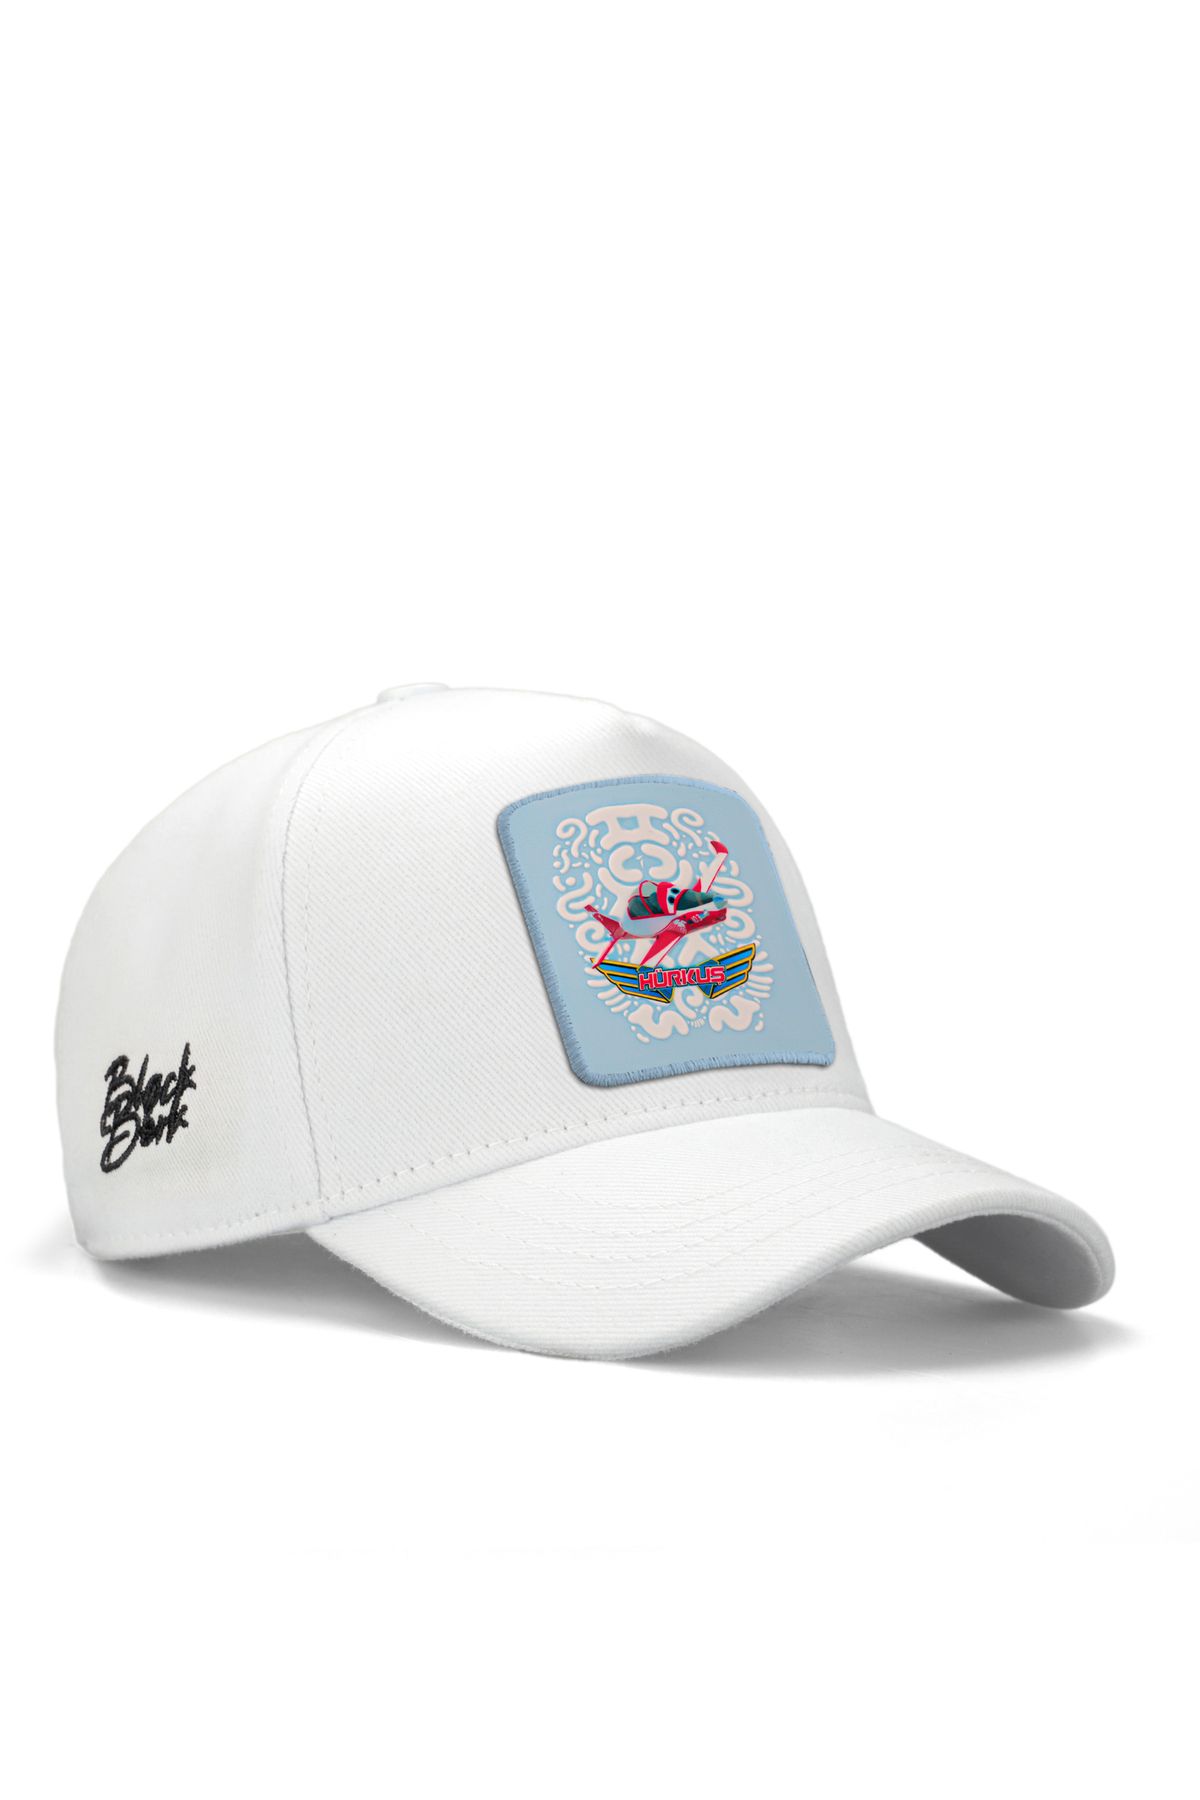 BlackBörk V1 Baseball Bulut Hürkuş Lisanlı Beyaz Çocuk Şapka